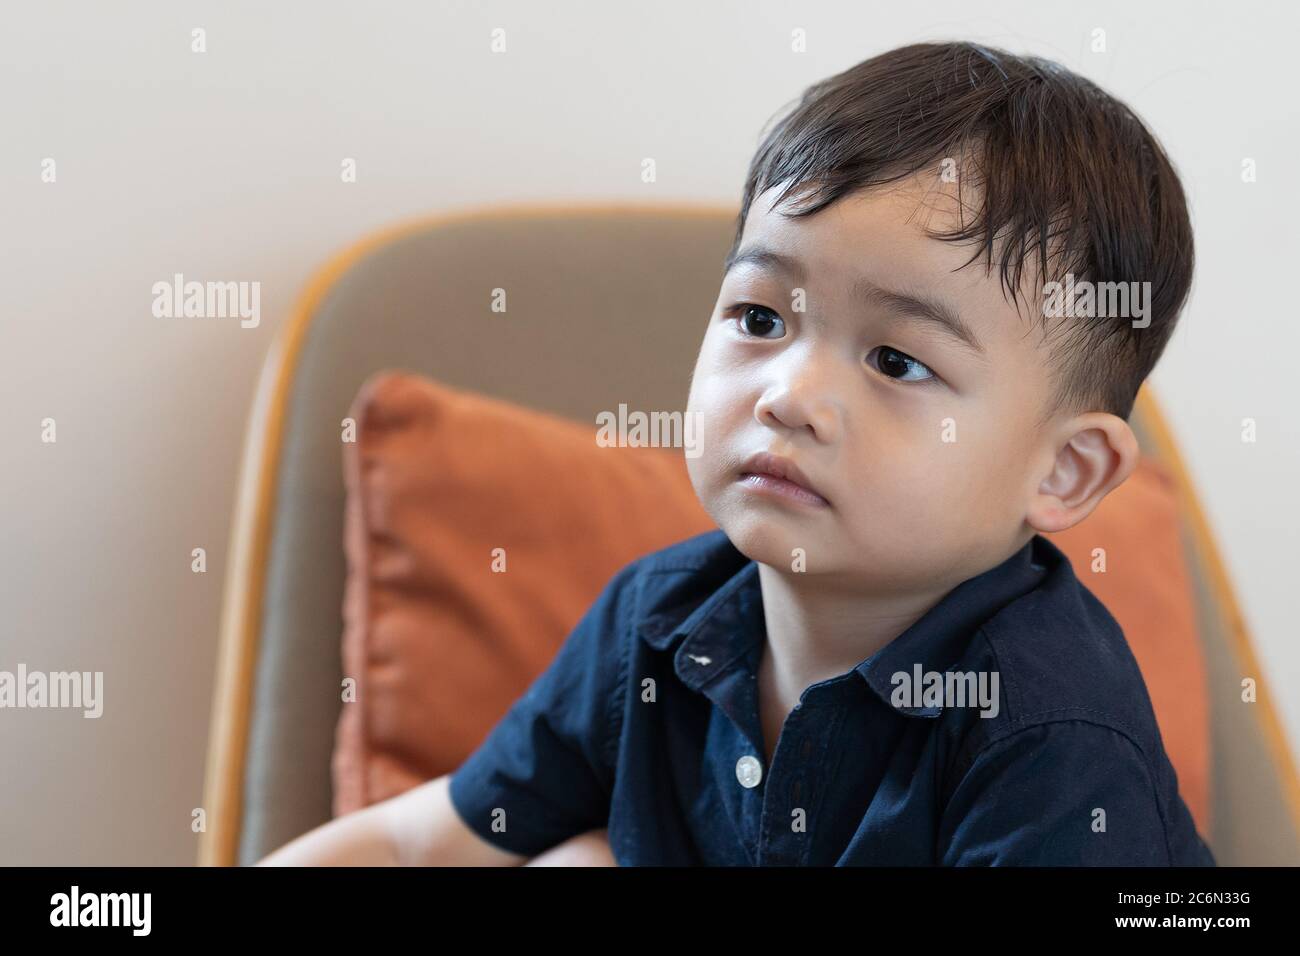 Asiatische niedliche Baby junge auf Sofa Hintergrund. Stockfoto